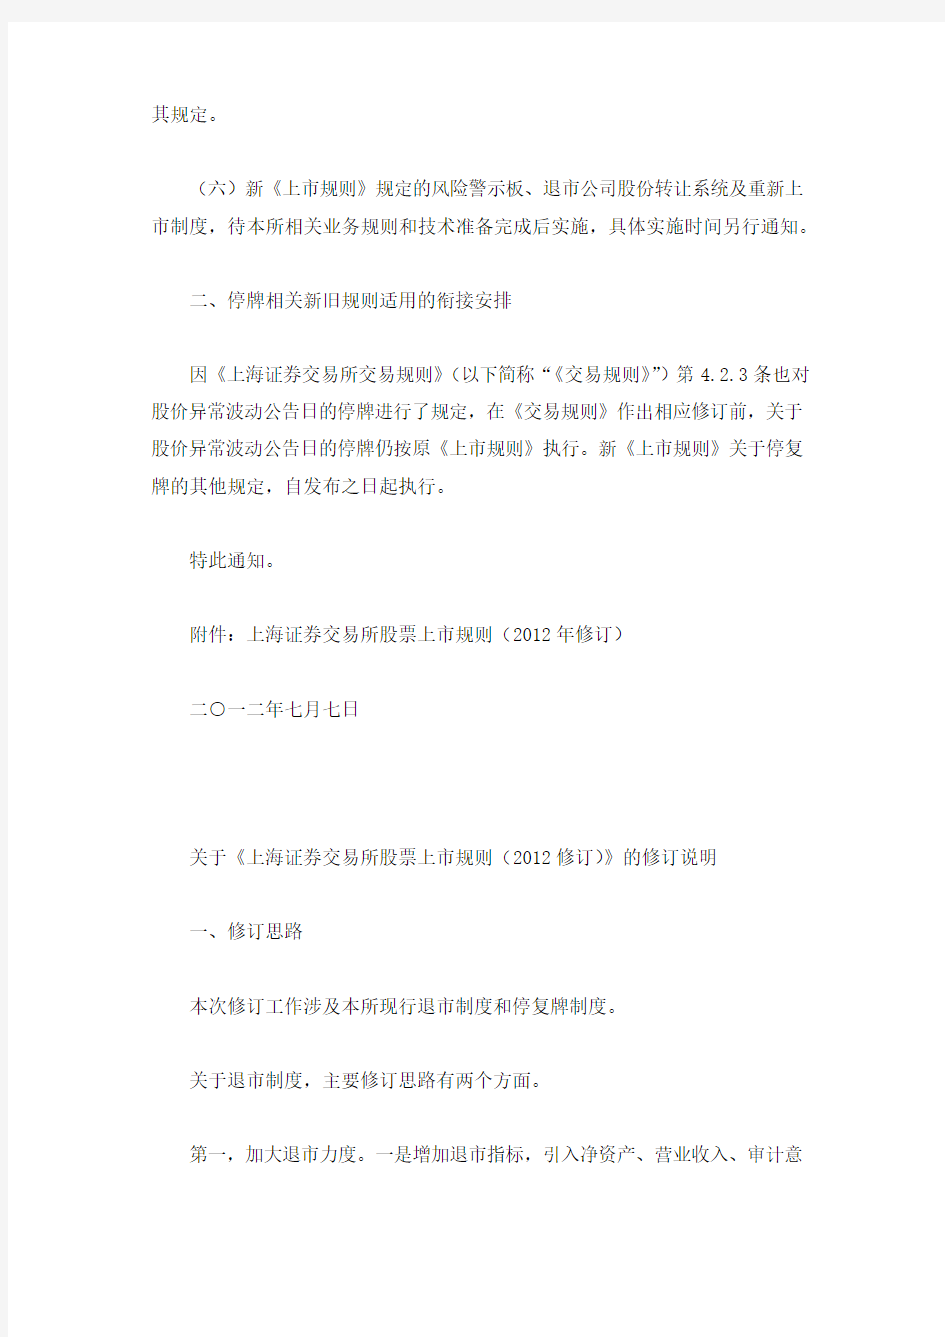 关于发布《上海证券交易所股票上市规则(2012年修订)》的通知